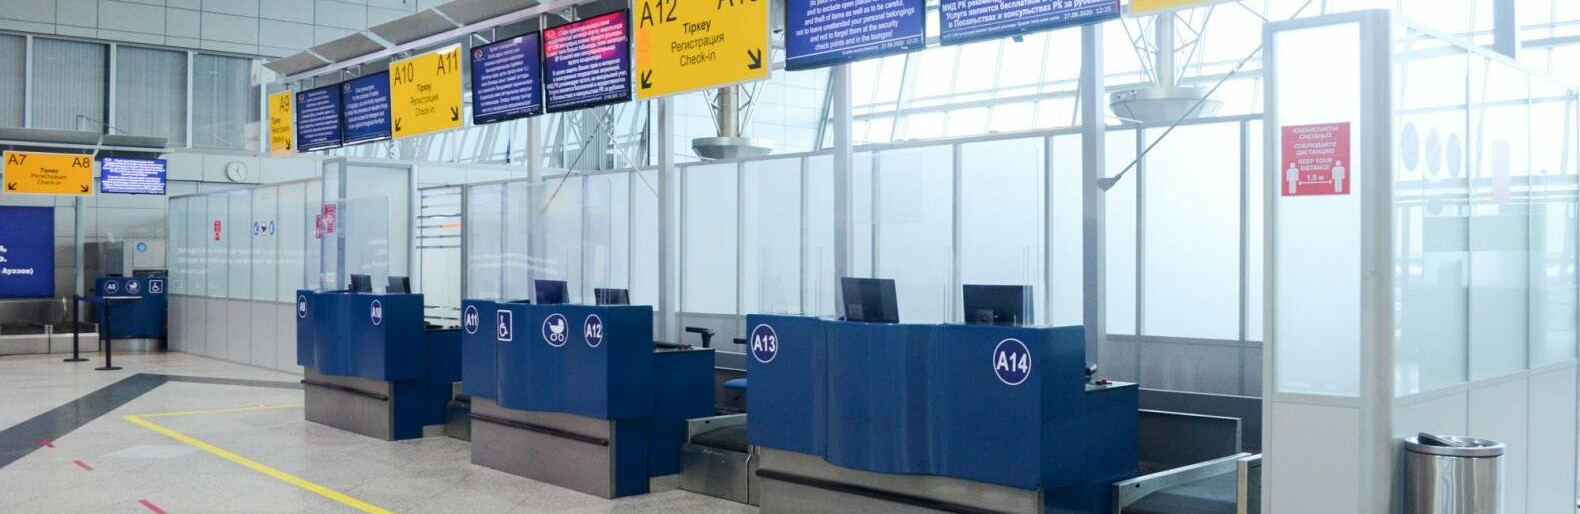 Цифровые документы можно использовать на авиарейсах между Алматы и Нур-Султаном